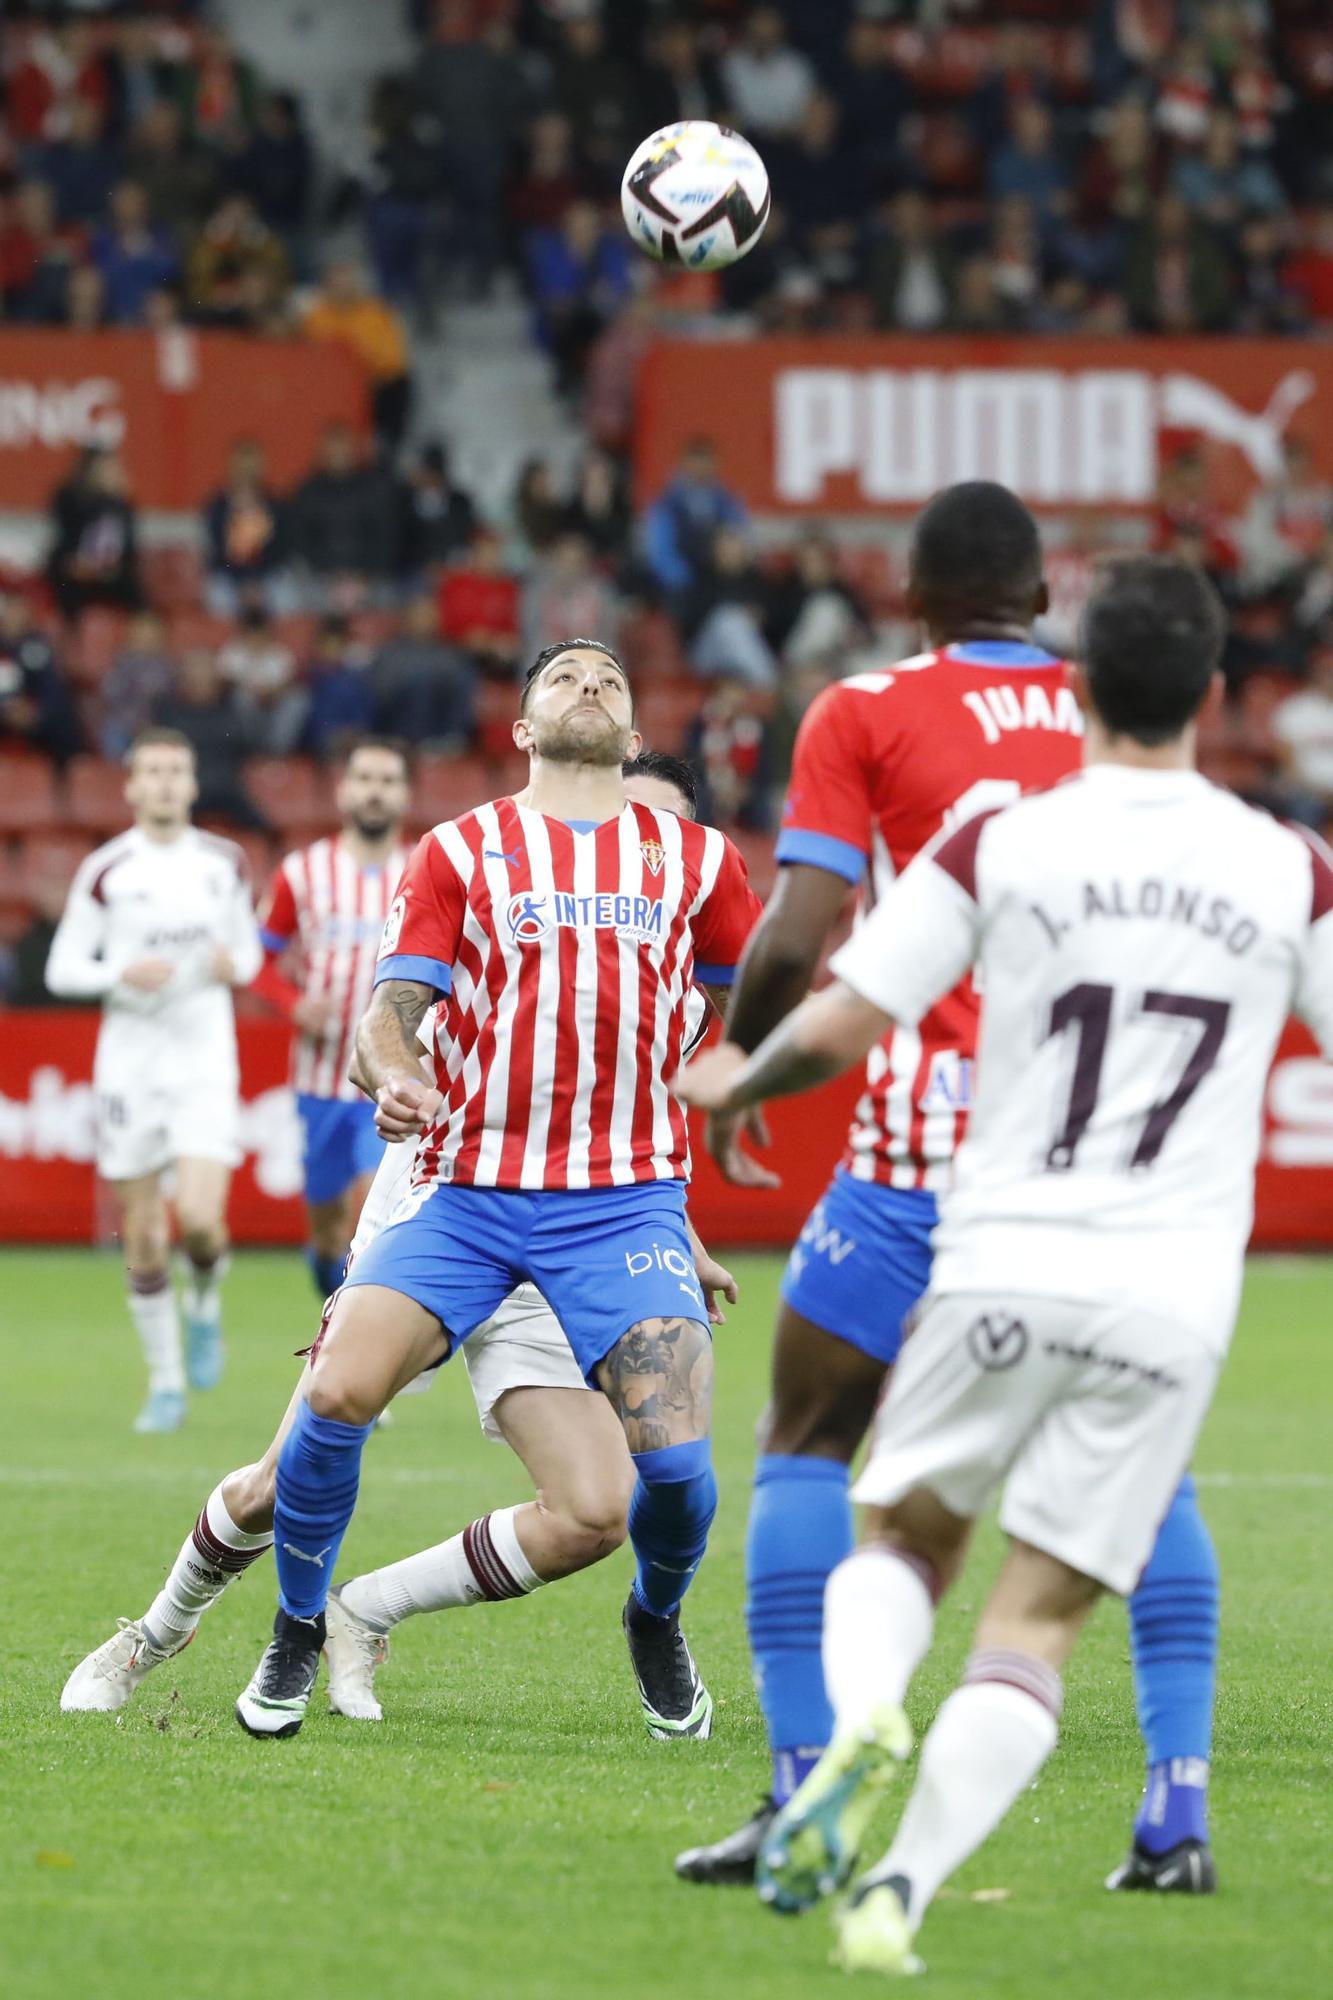 En imágenes: así fue el duelo entre Sporting y Albacete en El Molinón